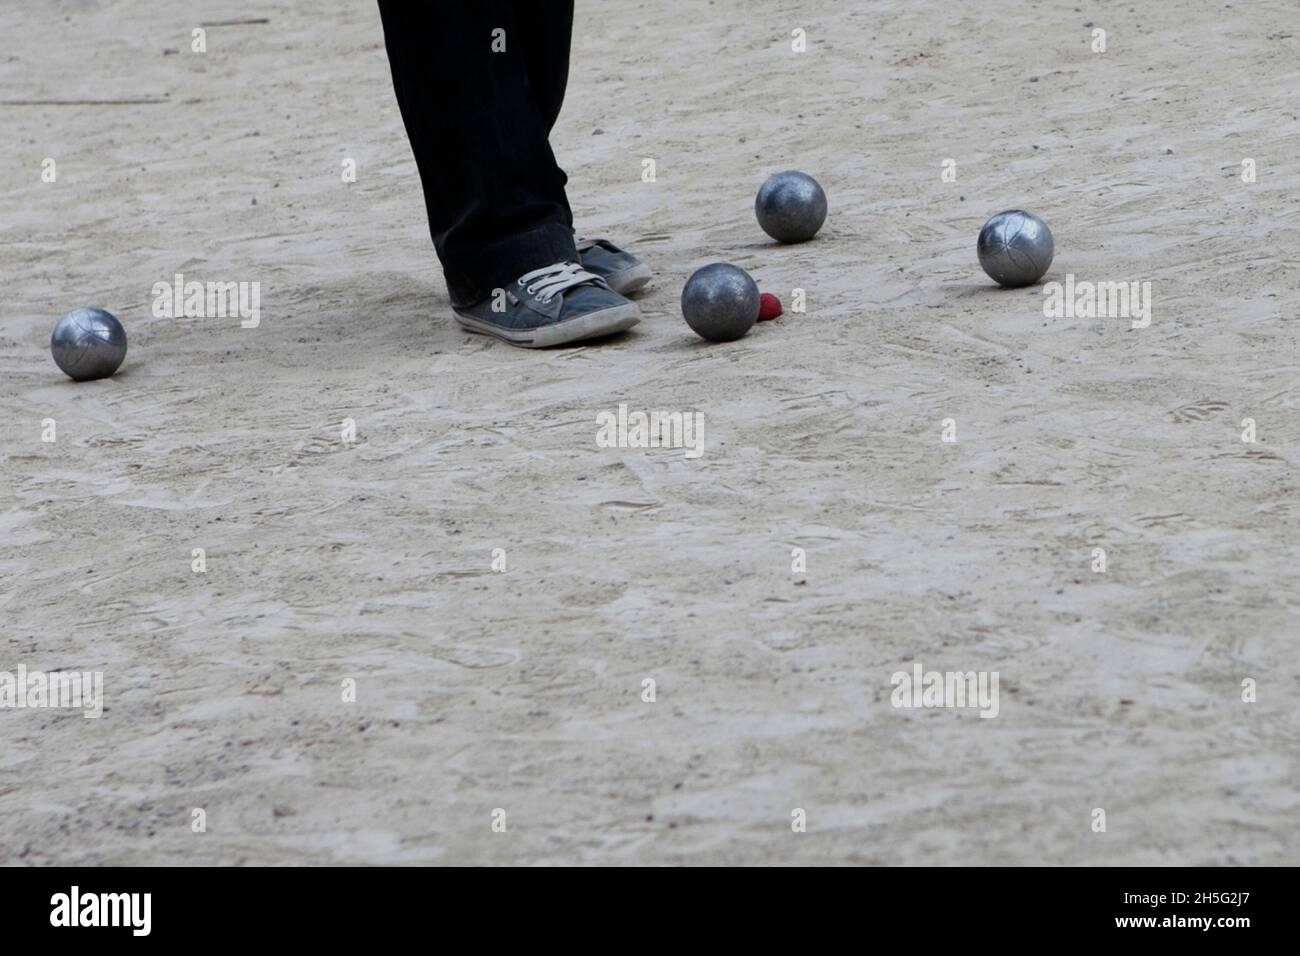 Ein Franzose, der gerade -auf einem öffentlichen Platz- Boule spielt. Keine Erkennbarkeit, da nur Bein. Cannes, Frankreich. Stockfoto